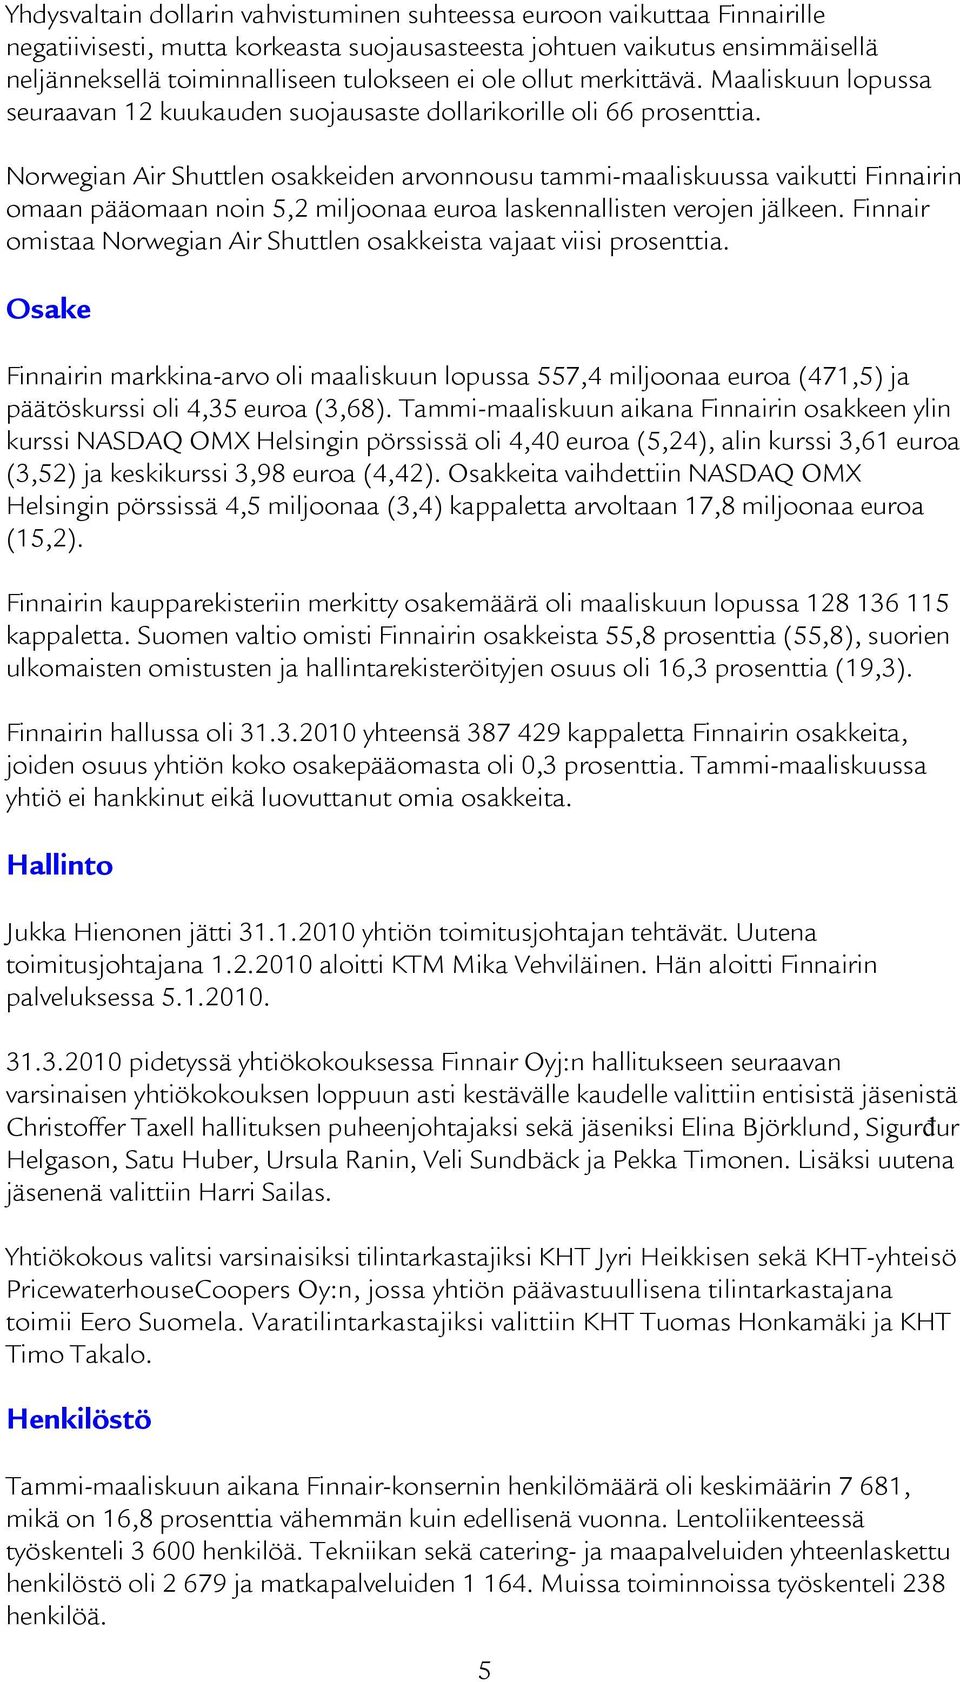 Norwegian Air Shuttlen osakkeiden arvonnousu tammi-maaliskuussa vaikutti Finnairin omaan pääomaan noin 5,2 miljoonaa euroa laskennallisten verojen jälkeen.